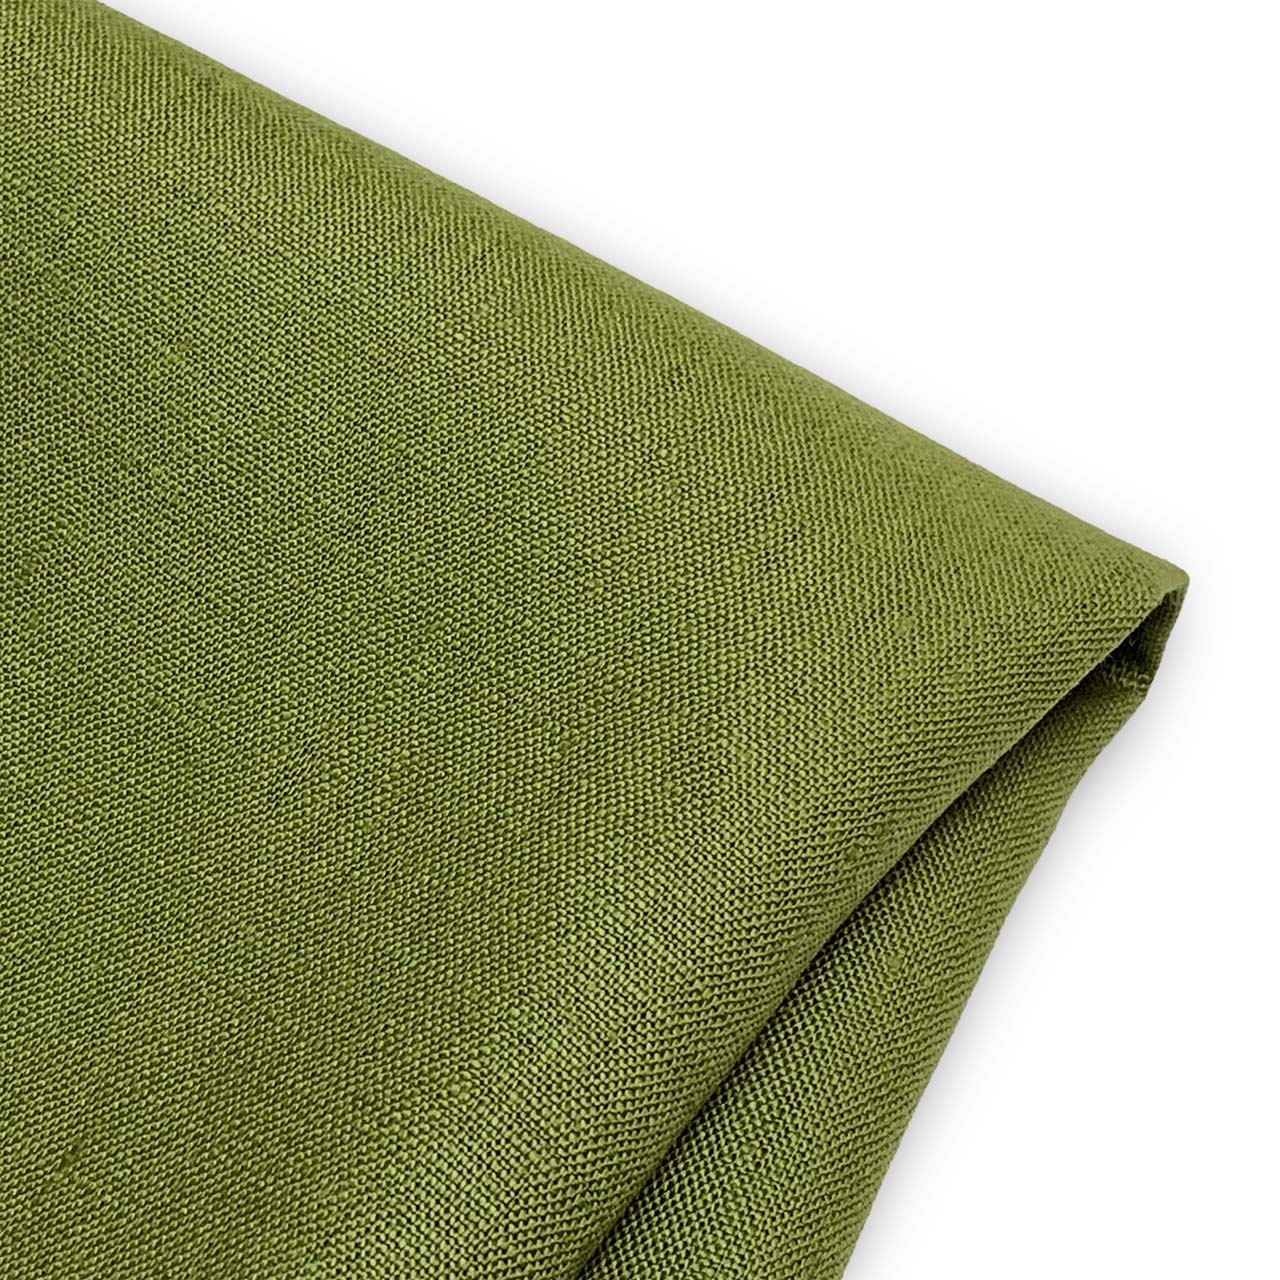 linen fabric green avocado heavy weight linen - moda linen fabric collection